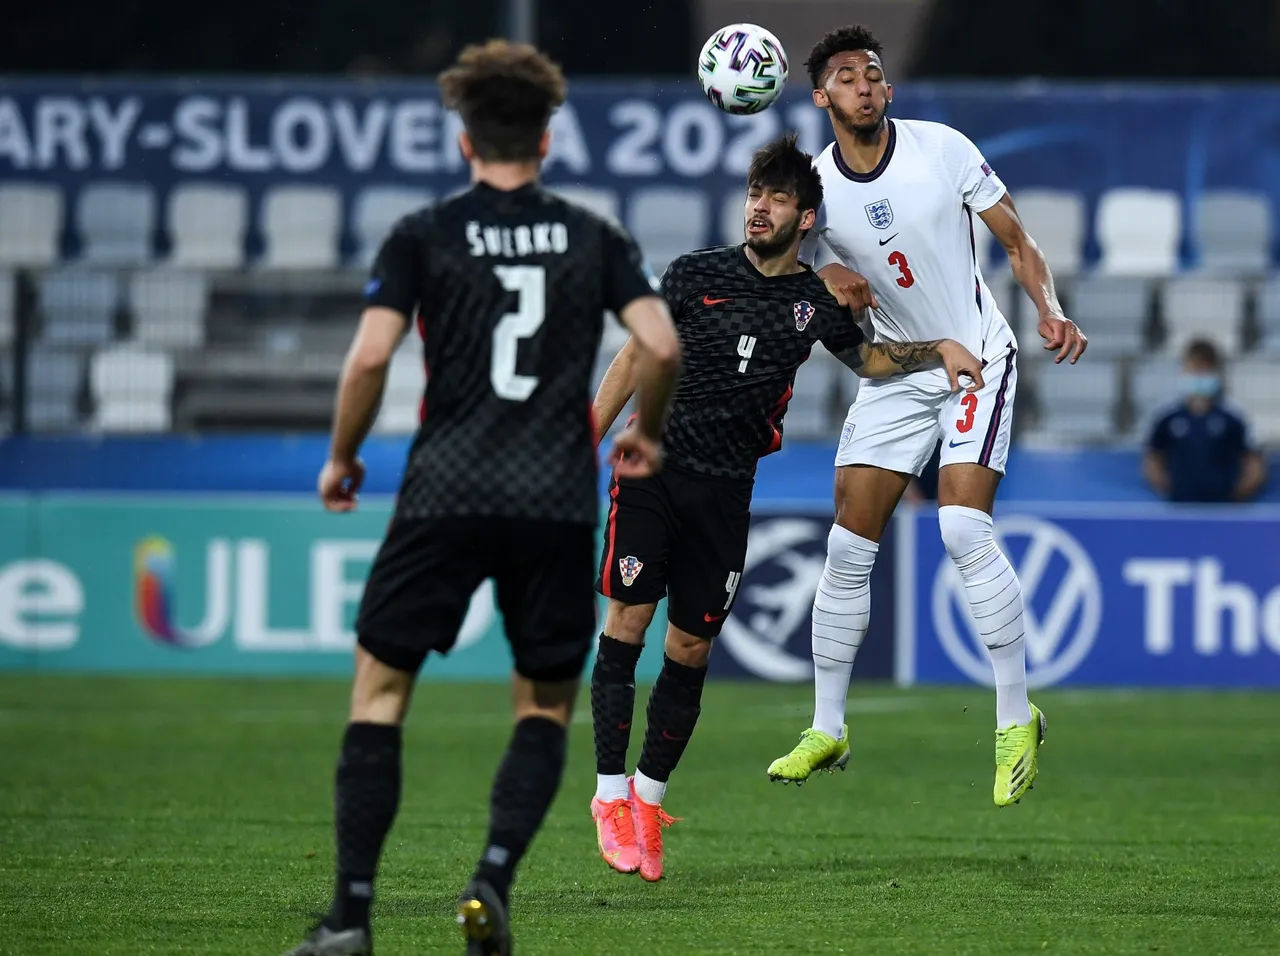 Susret Hrvatske i Engleske na Europskom U21 prvenstvu